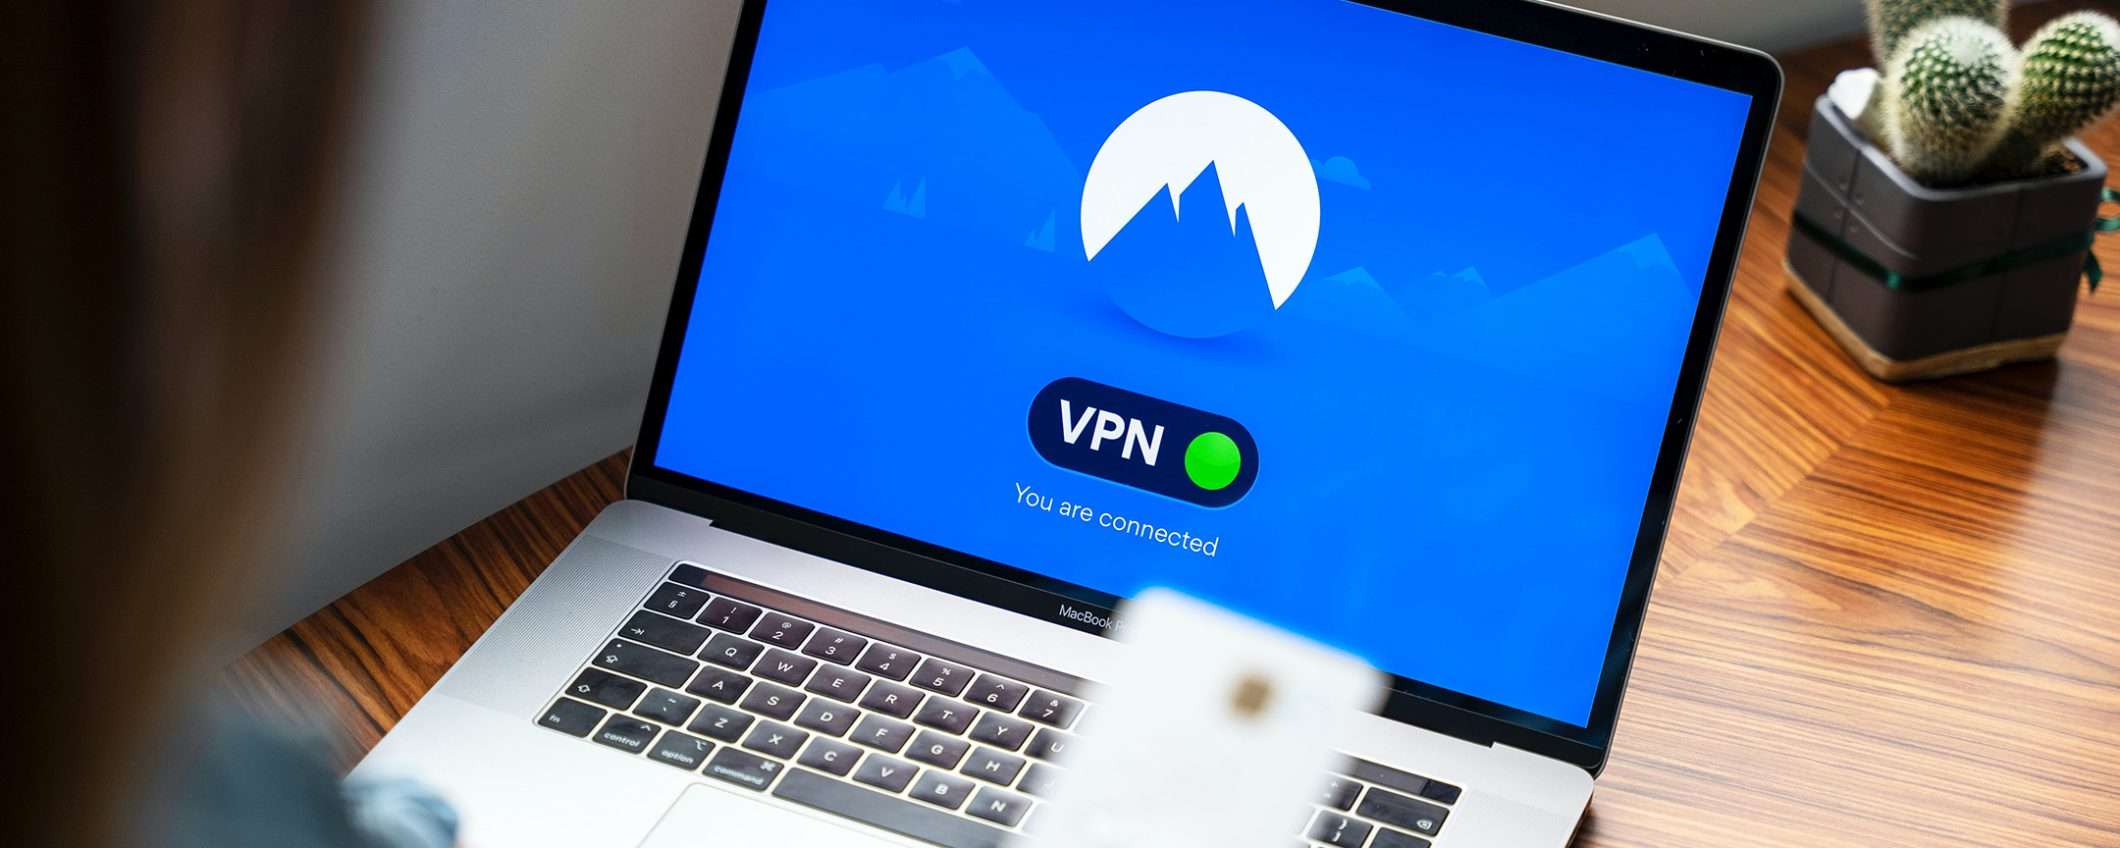 Hai scelto la VPN migliore? Ecco un test per capirlo